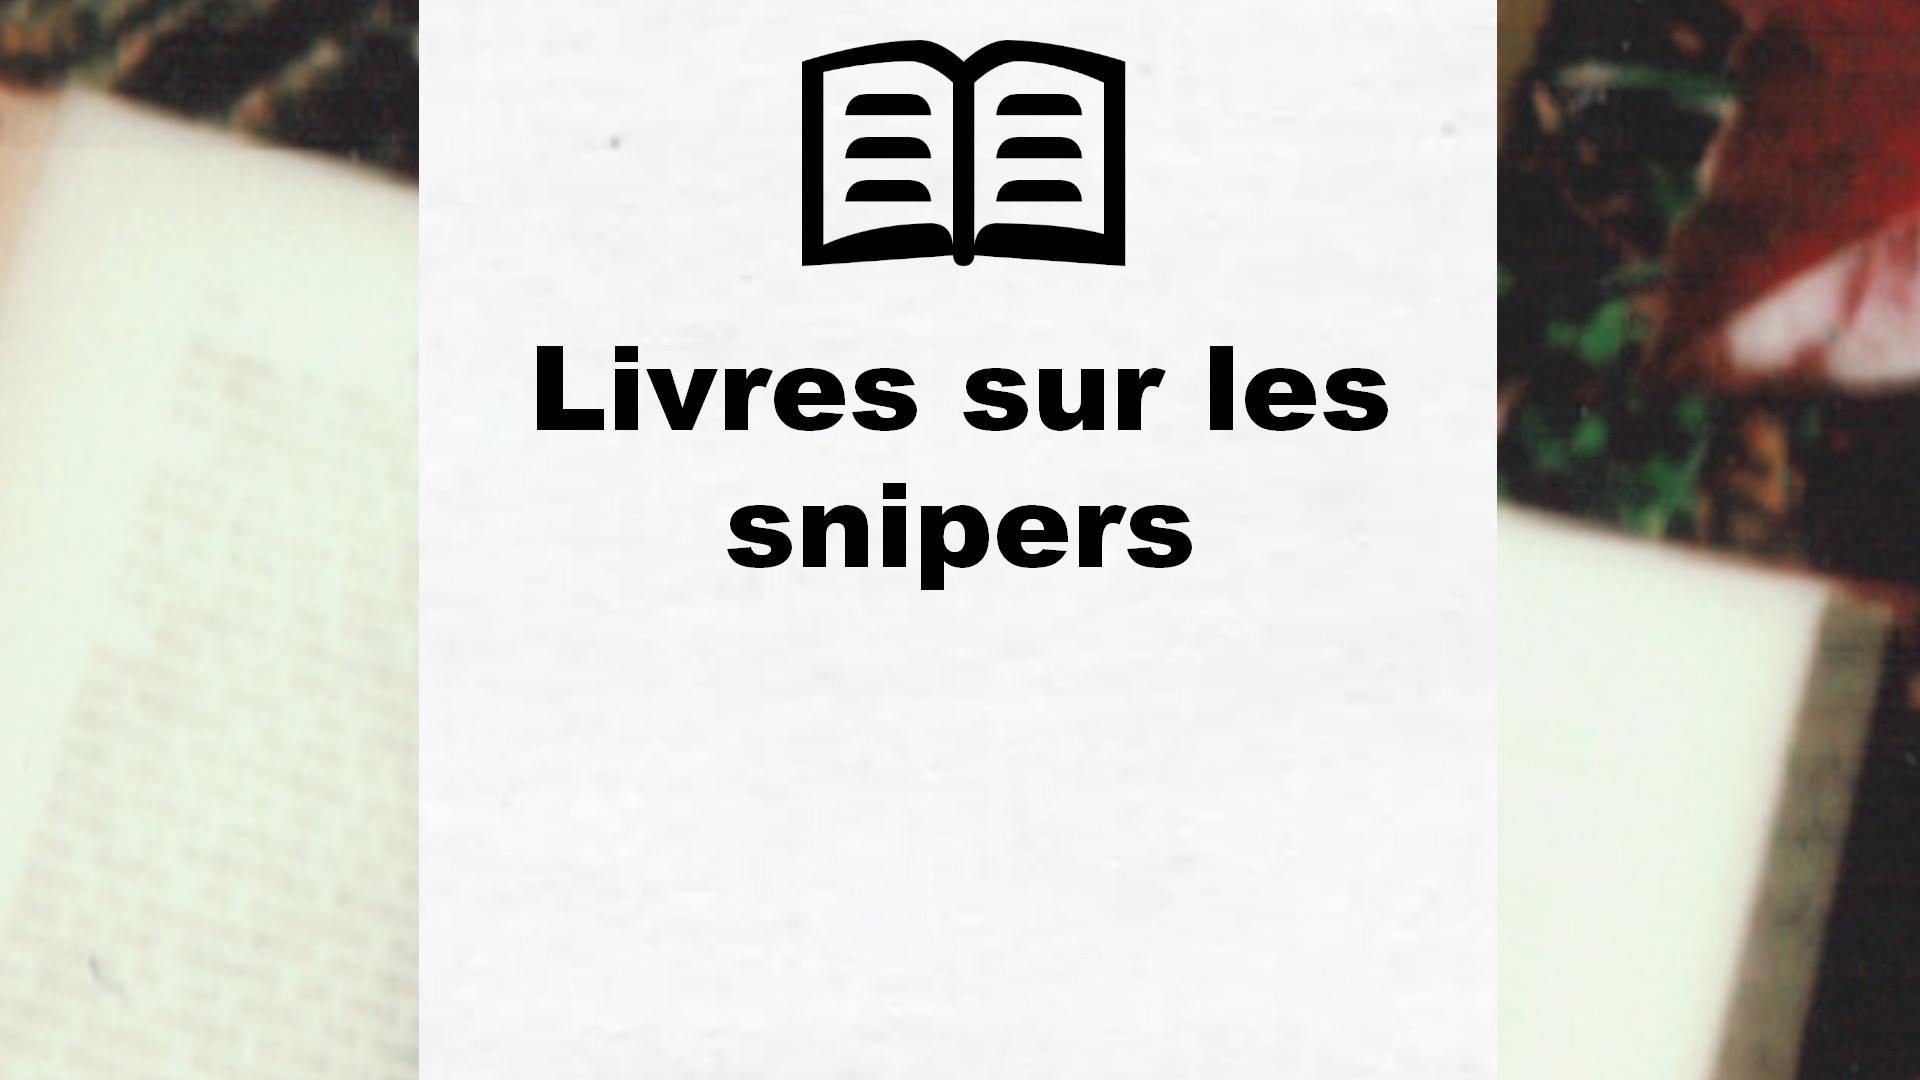 Livres sur les snipers